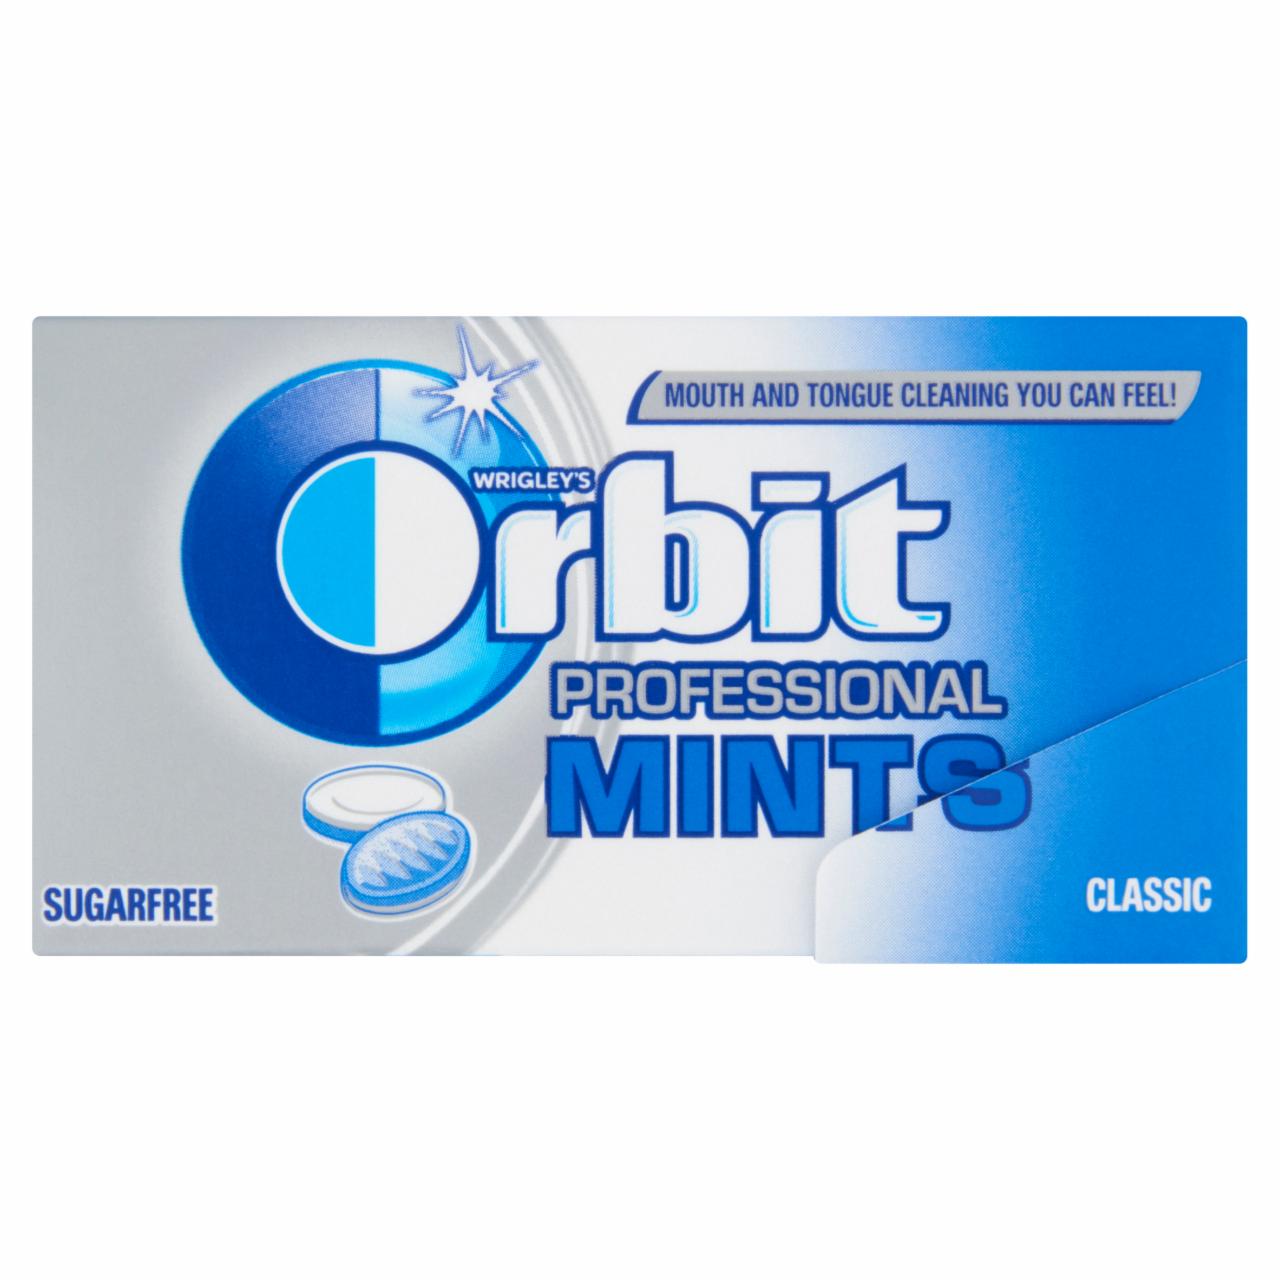 Képek - Orbit Professional Mints Classic mentaízű töltetlen keménycukorka 18 g